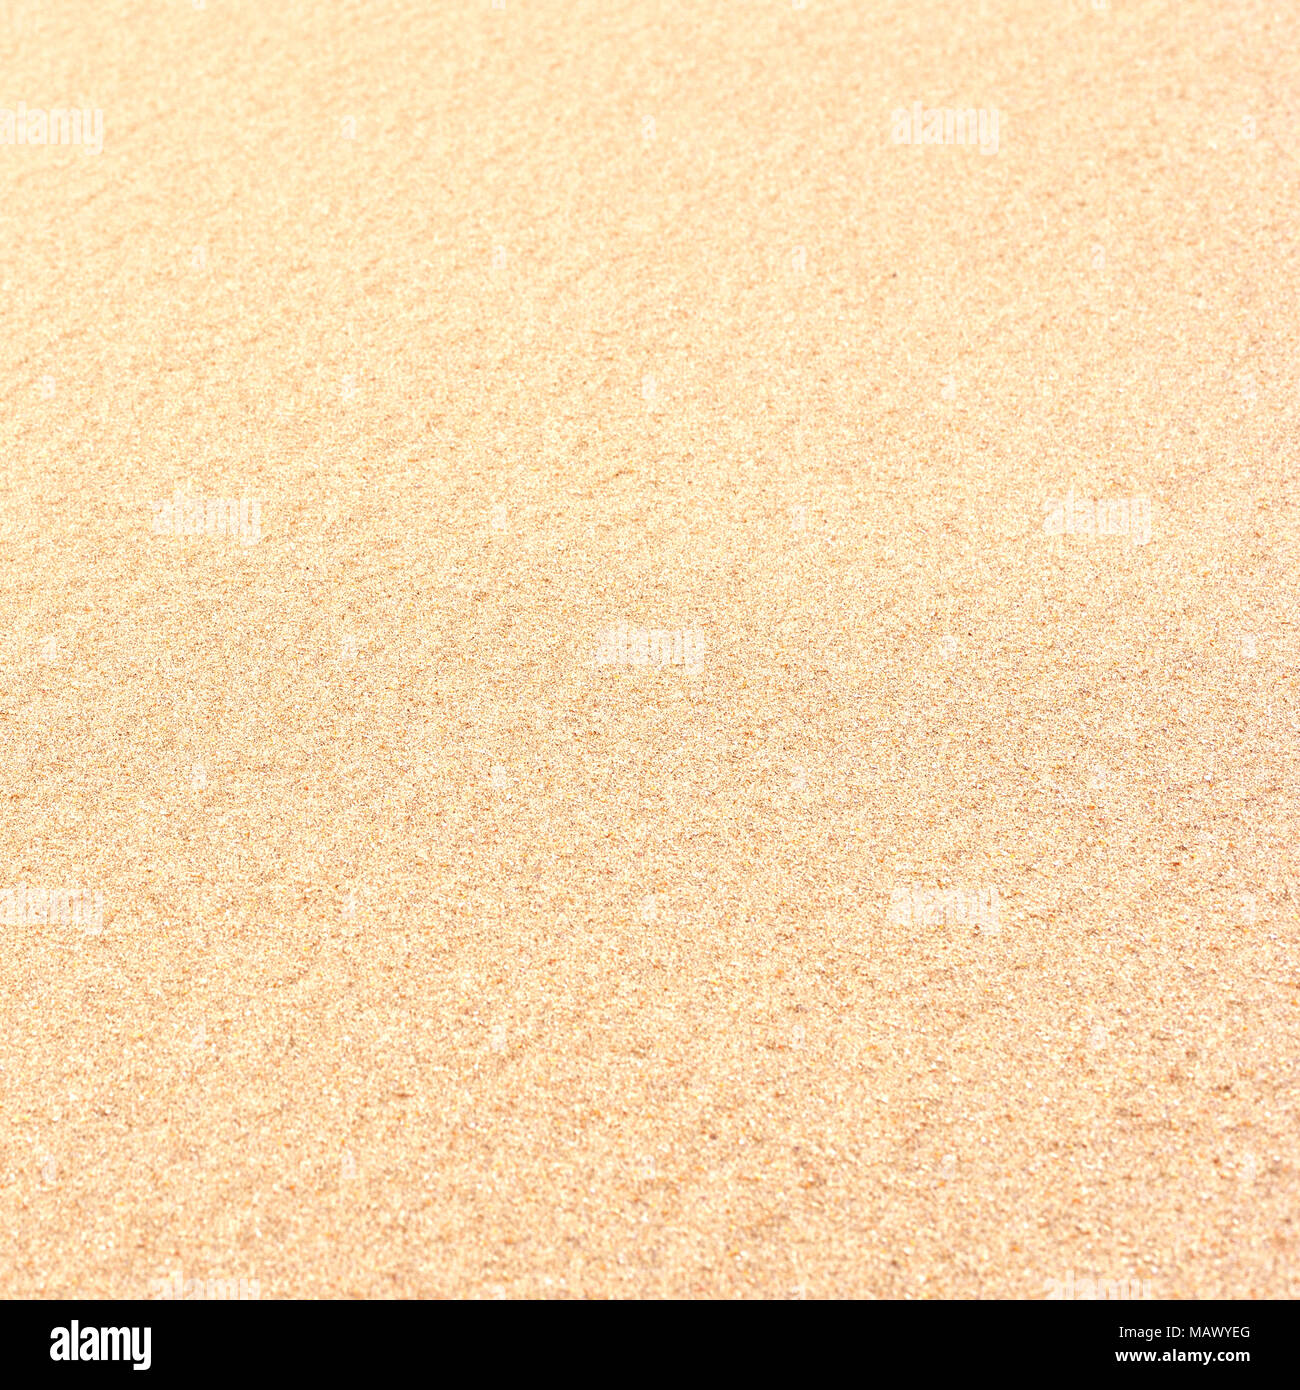 Fond de sable, fond de plage avec copie espace. Vacances d'arrière-plan. Banque D'Images